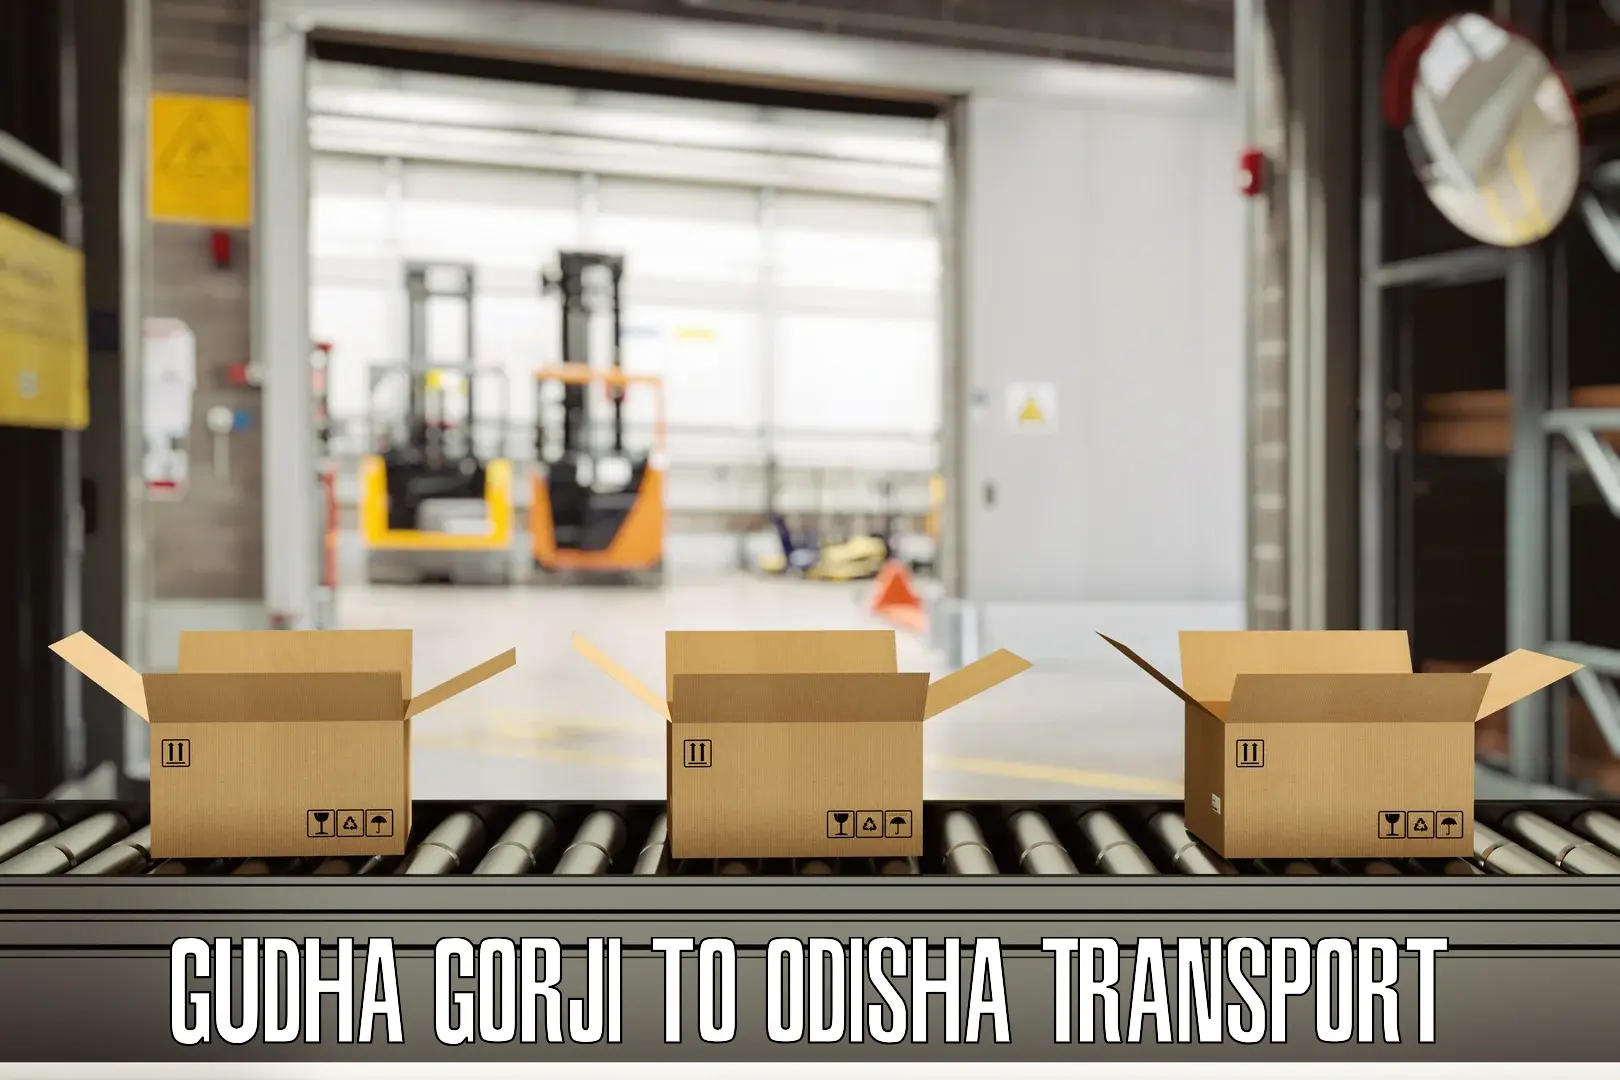 Intercity transport Gudha Gorji to Kesinga